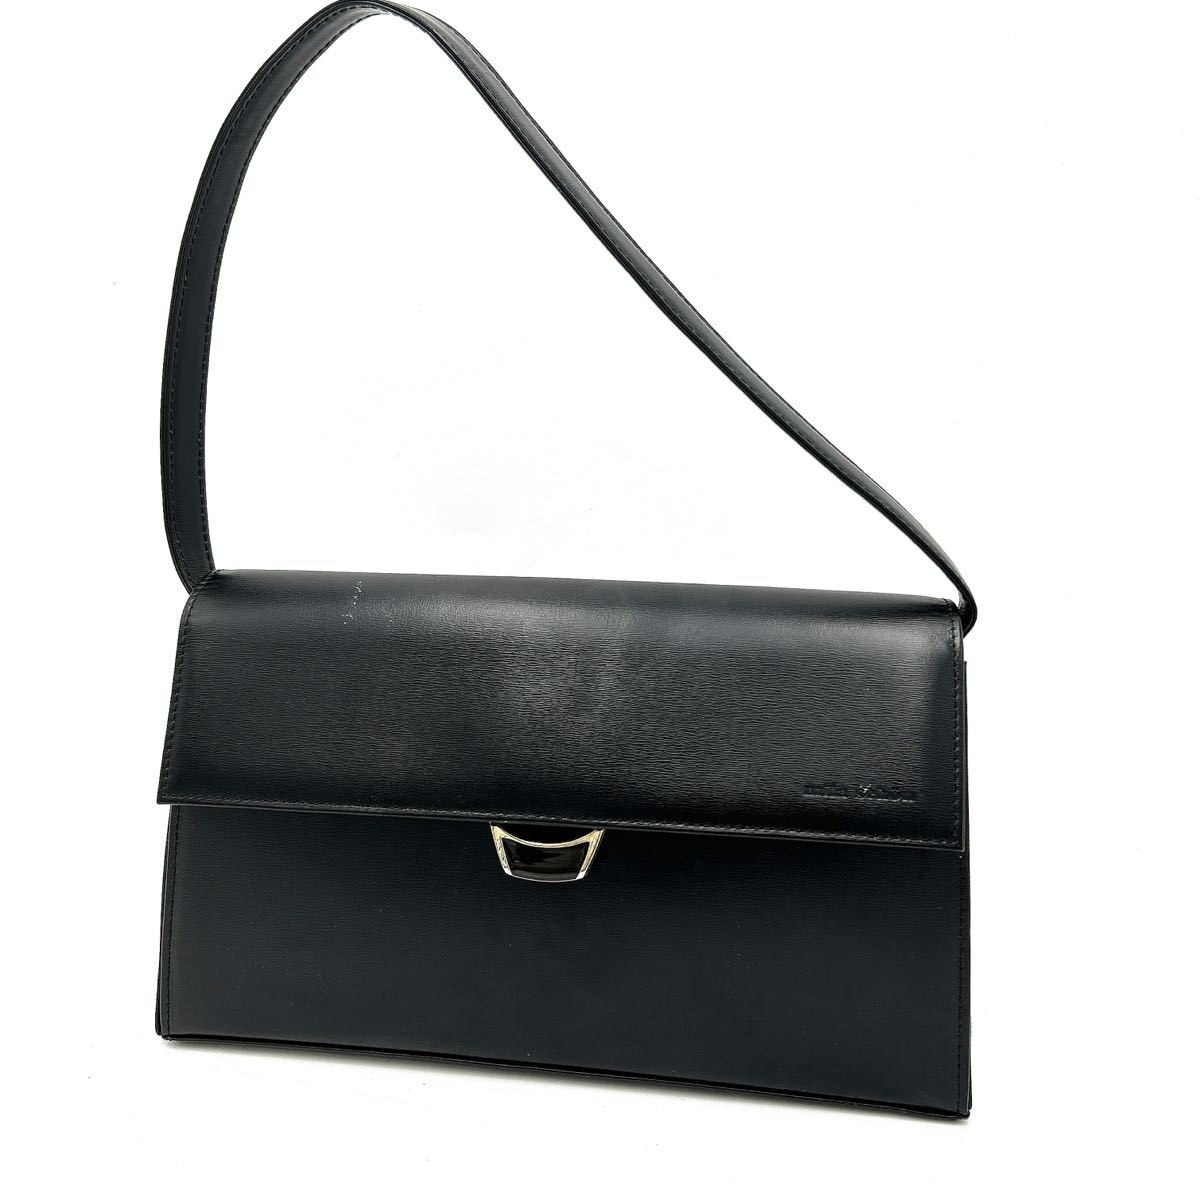 @ 人気モデル '洗礼されたデザイン'『Mila Schon ミラショーン』 ハンドバッグ 手提げ鞄 パーティーバッグ 婦人鞄 レディース BLACK 黒系_画像1